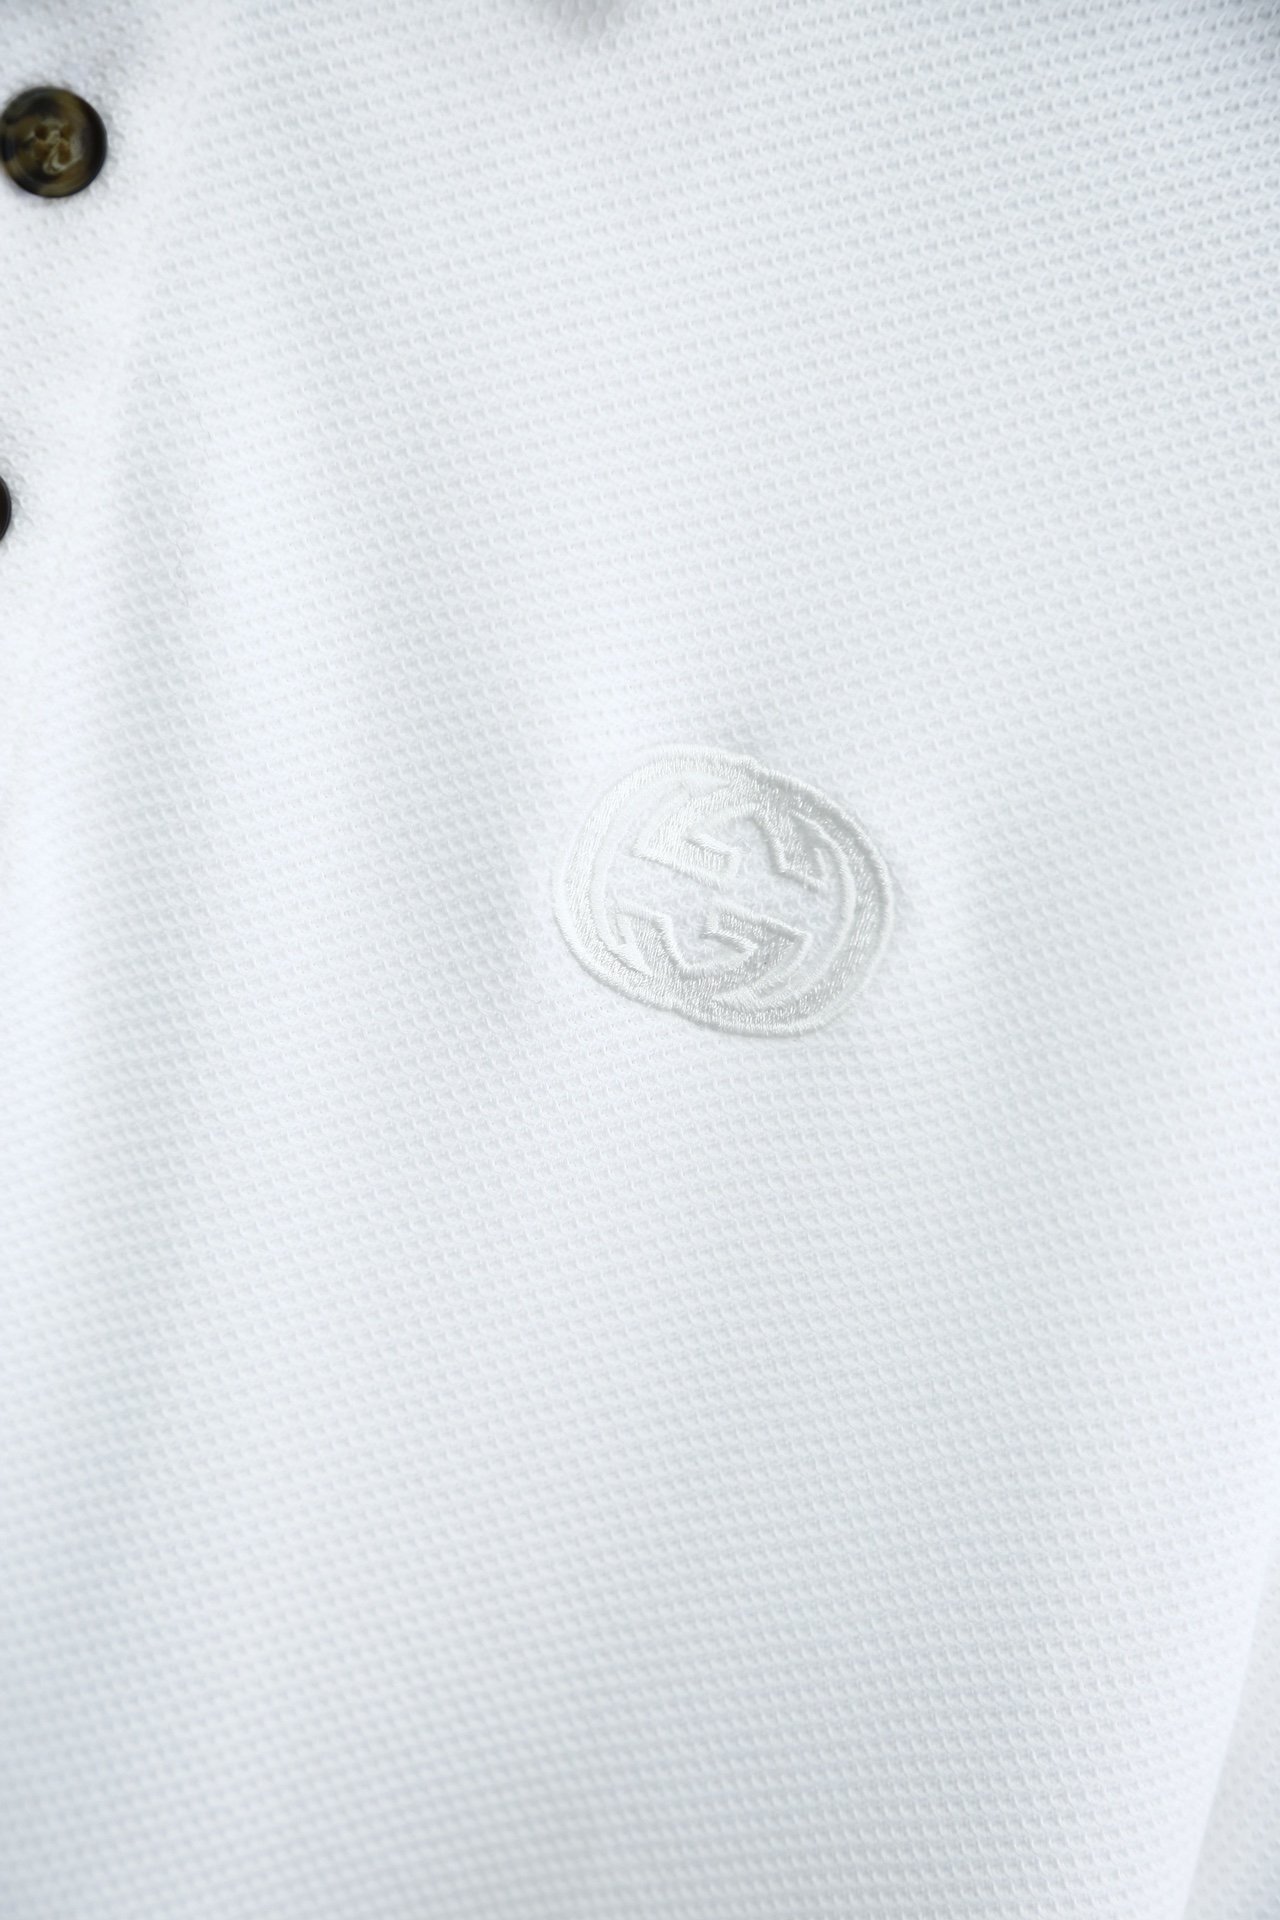 Gucci古奇-翻领面料采用新款特定双珠地工艺水后克重270克以上做工精细工艺复杂品牌特定双G刺绣为主题